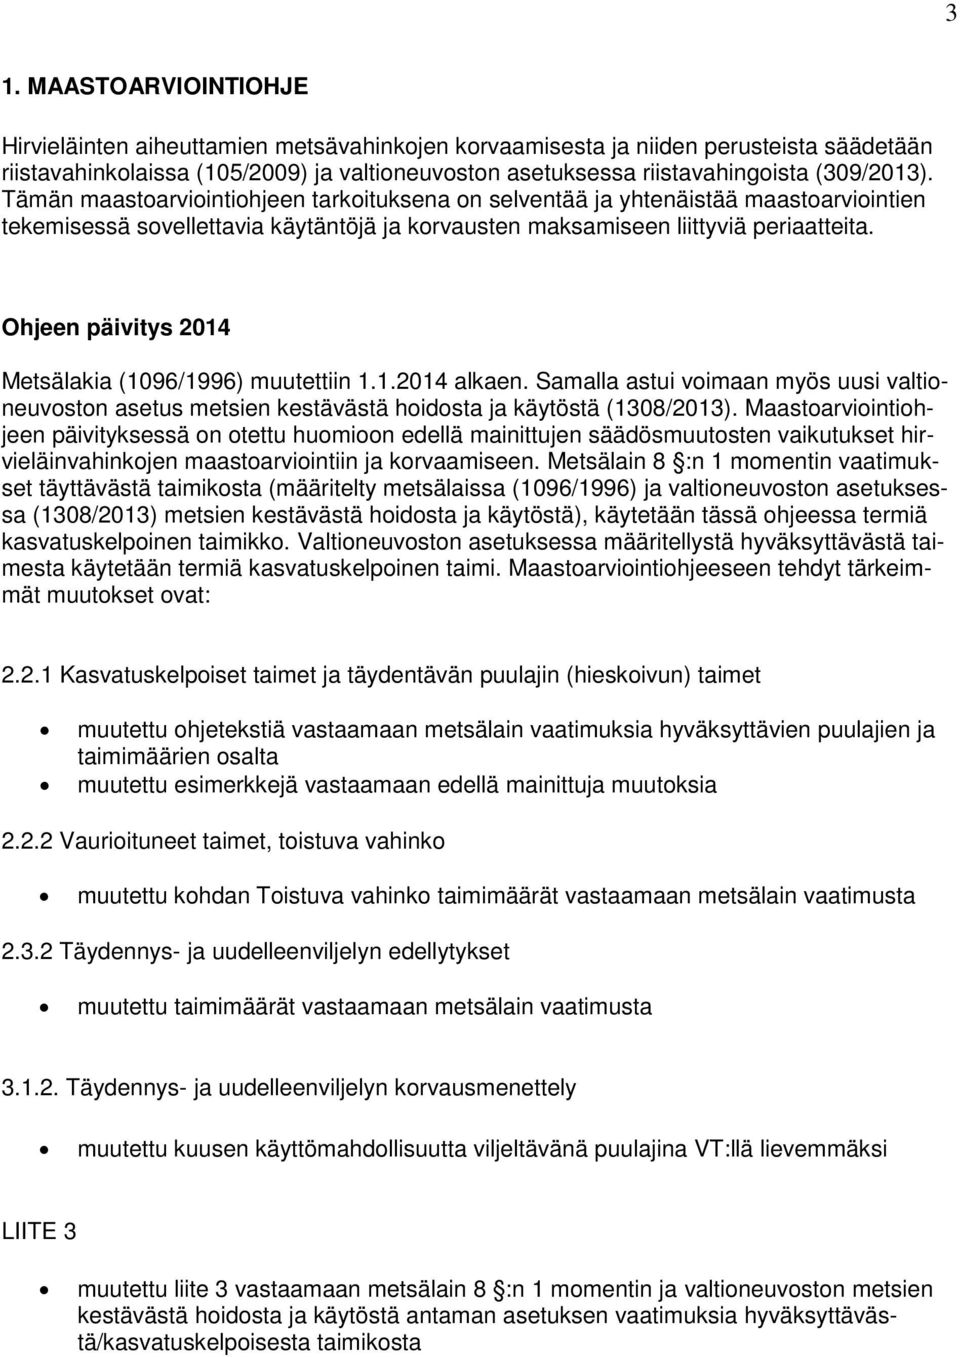 Ohjeen päivitys 2014 Metsälakia (1096/1996) muutettiin 1.1.2014 alkaen. Samalla astui voimaan myös uusi valtioneuvoston asetus metsien kestävästä hoidosta ja käytöstä (1308/2013).